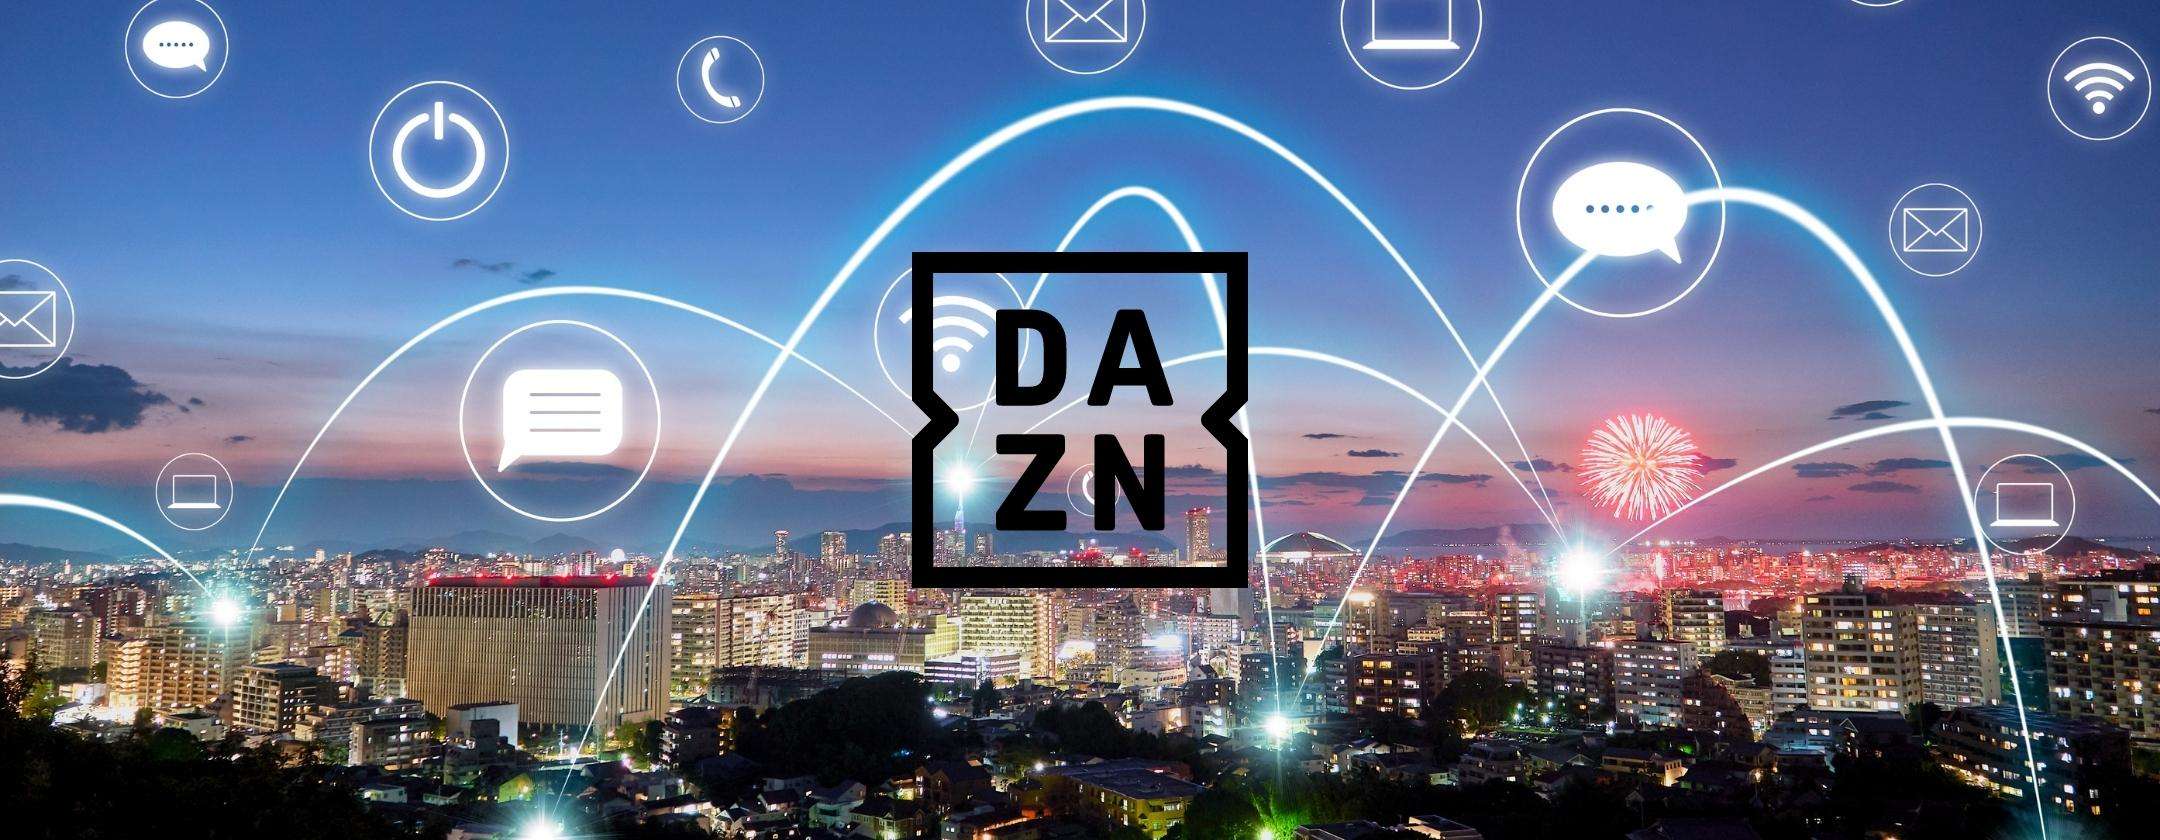 DAZN: quanta connessione serve per lo streaming